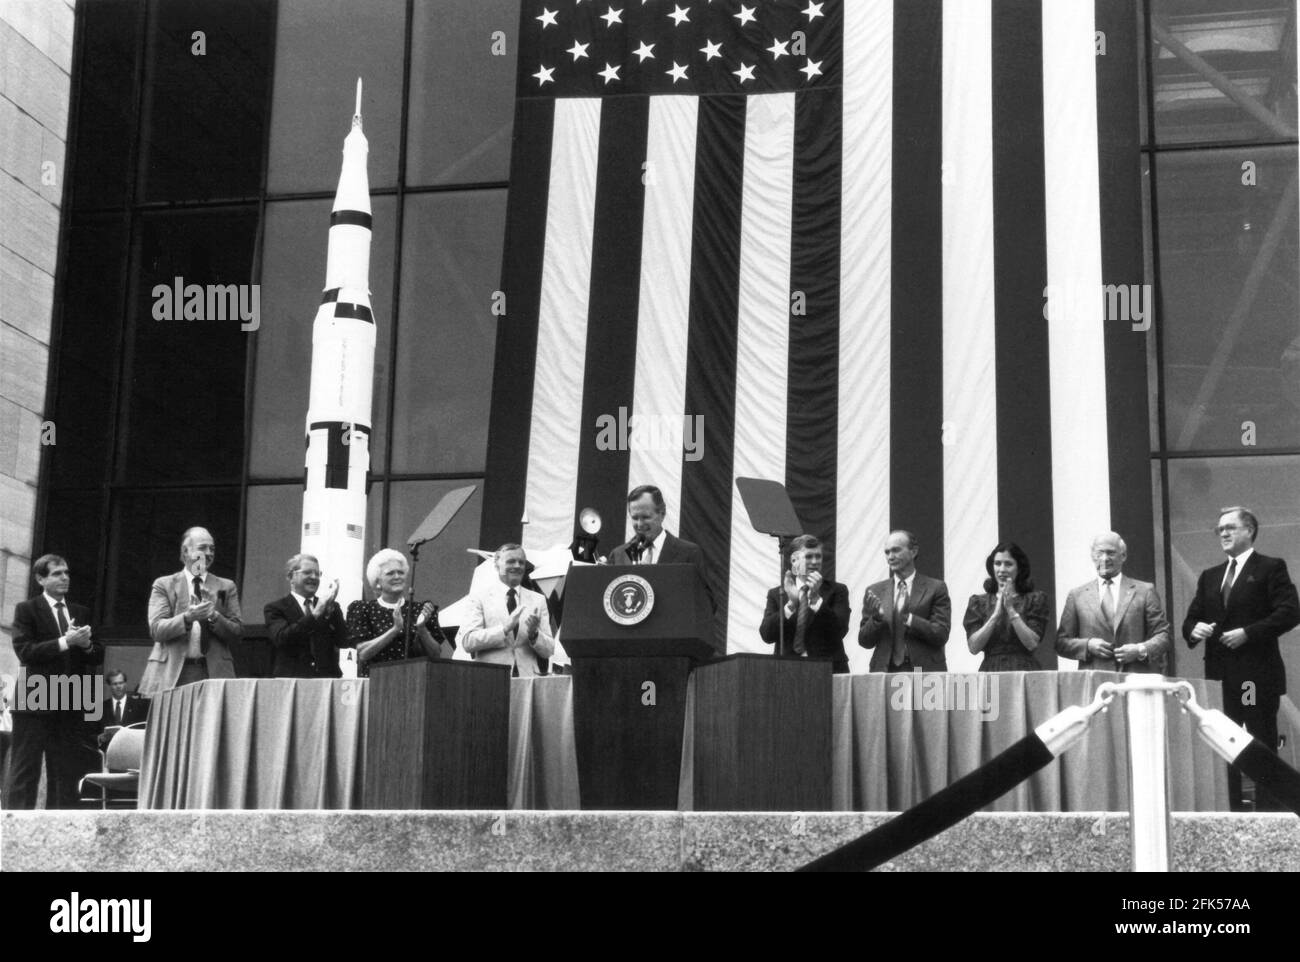 Photo du dossier - Washington, DC - -- Président des États-Unis George H.W. Bush s'exprime à l'occasion du 20e anniversaire de l'atterrissage sur la Lune d'Apollo 11 du Musée national de l'air et de l'espace. Ici, le 20 juillet 1989, Bush a annoncé sa nouvelle initiative d'exploration spatiale, qui consistait à compléter la station spatiale, à ramener l'homme sur la lune et à amener l'homme sur Mars pour la première fois. Le plan s'est effondré lorsque la NASA a proposé un budget estimé à 500 milliards sur les 20 à 30 prochaines années pour atteindre l'objectif du Président. Le Congrès a rechigné et la NASA a repris son programme antérieur d'exploration spatiale principalement robotique. Pour Banque D'Images